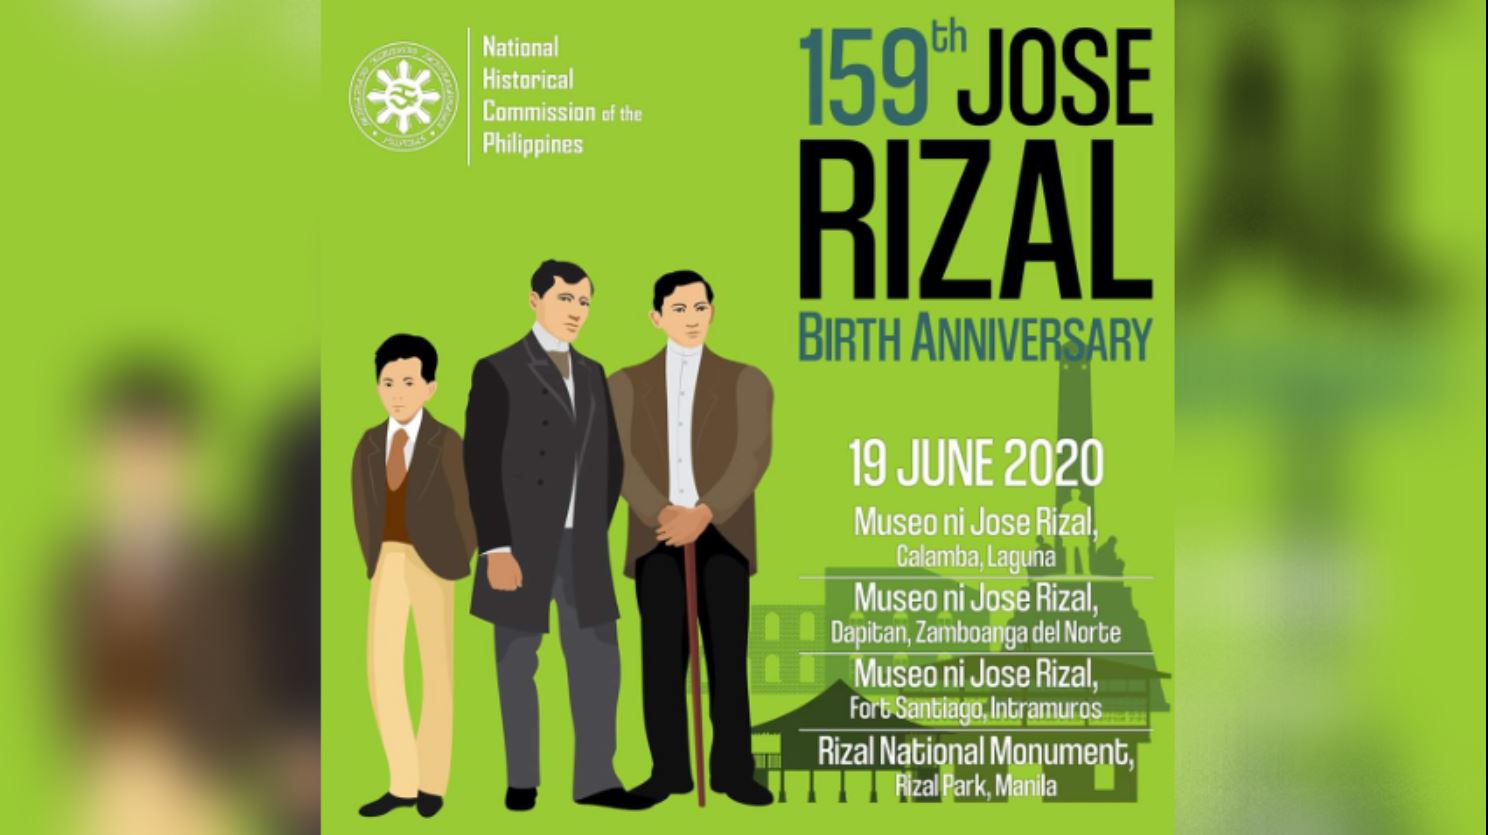 Jose Rizal 159th birth anniversary